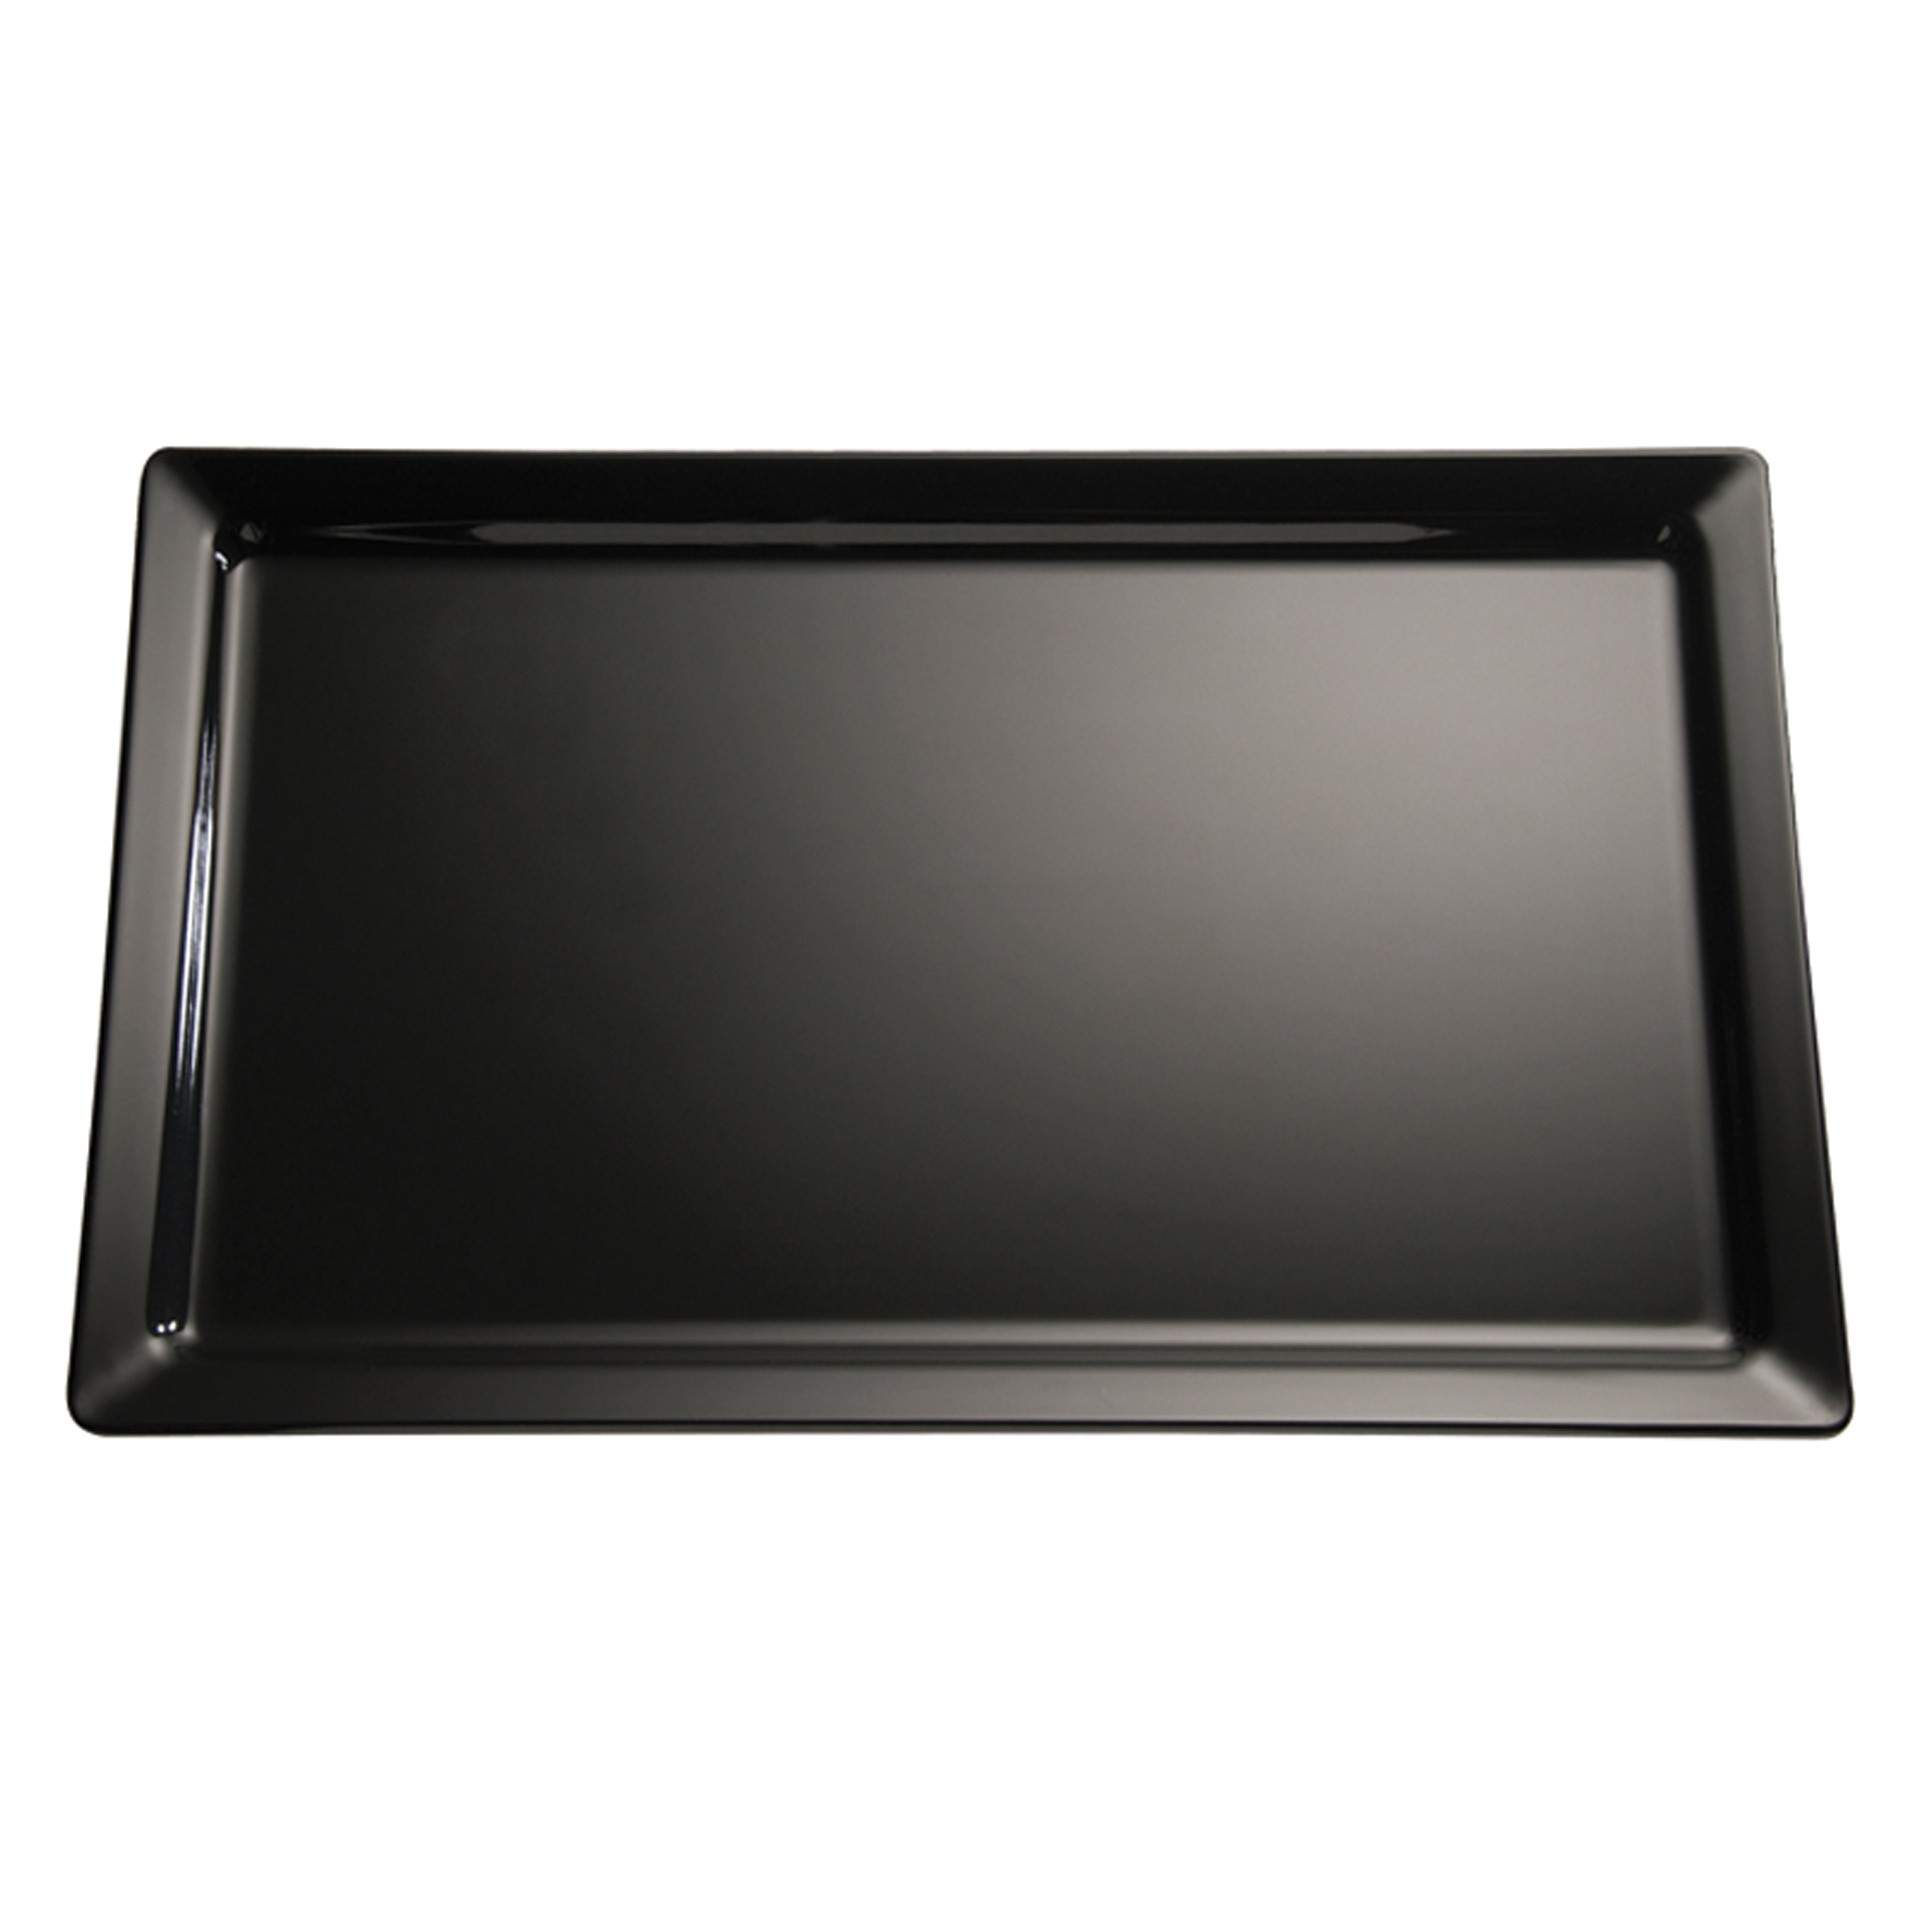 GN-Tablett - Serie Pure - schwarz - Abm. 3 cm - GN 1/3 (325 x 176 mm) - Melamin - 83491-B